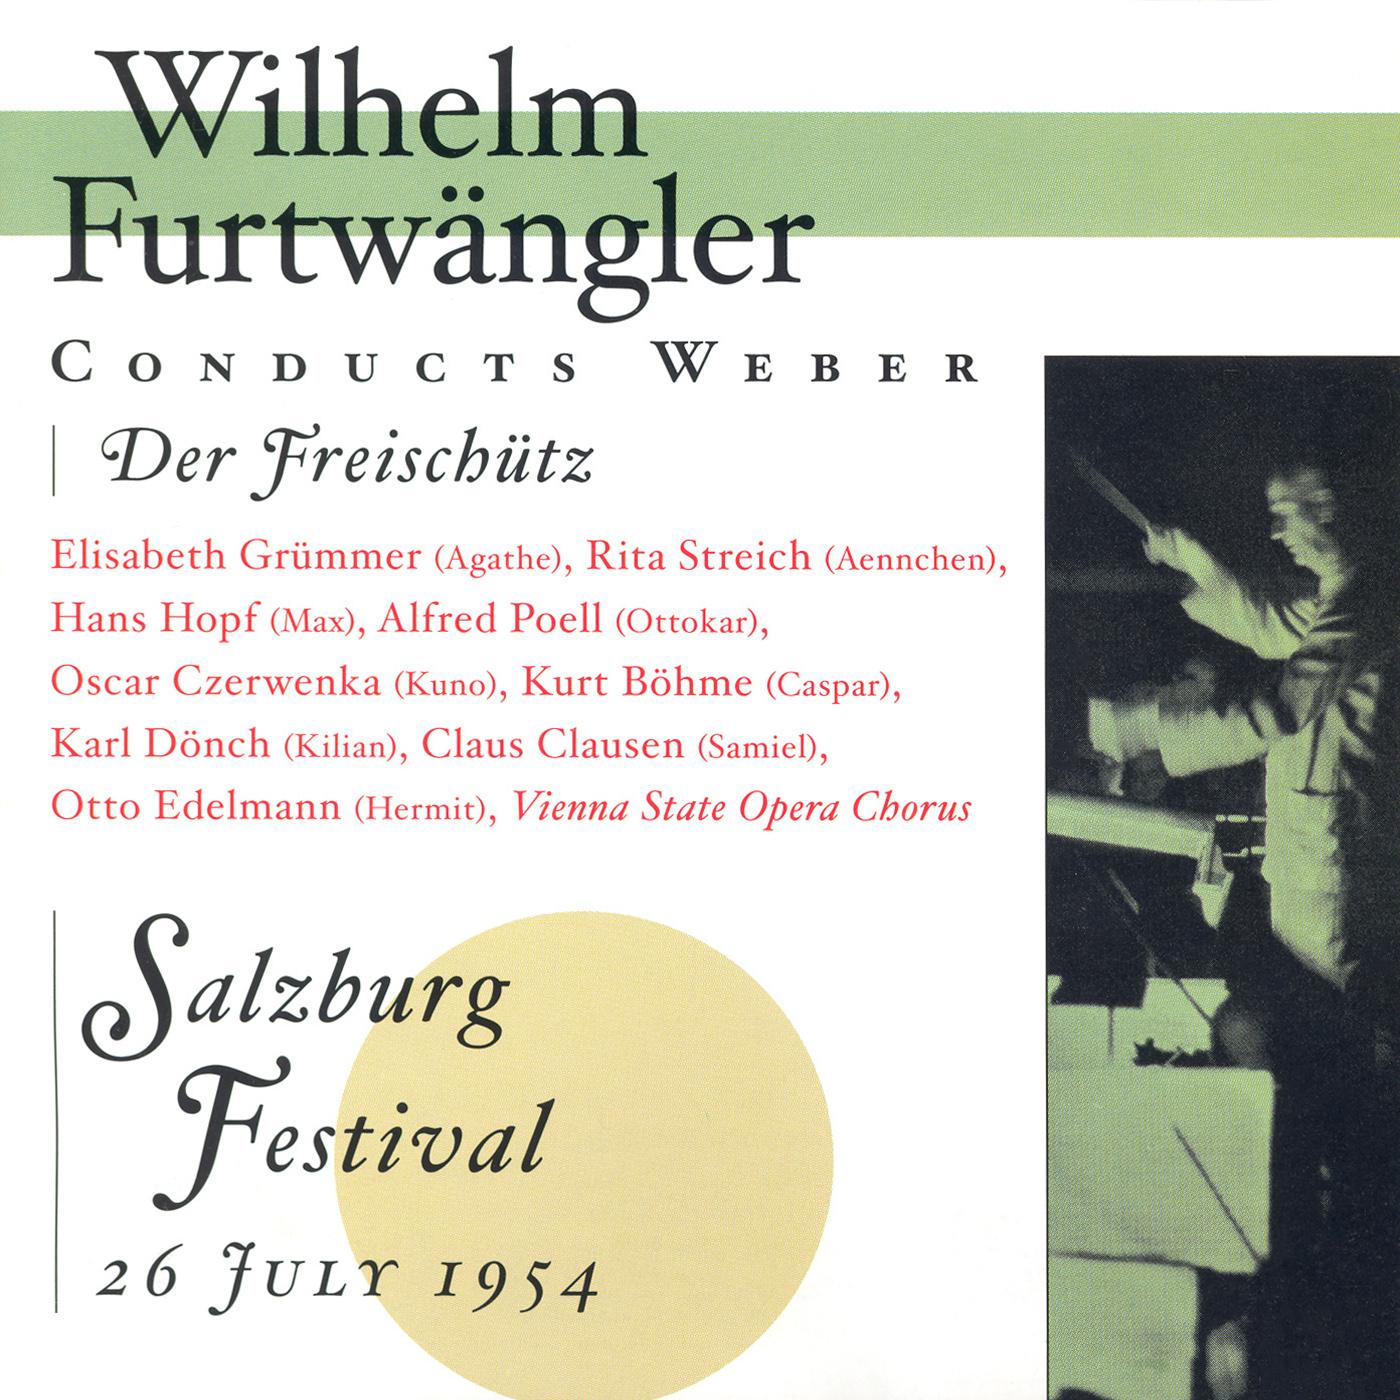 WEBER, C.: Freischutz (Der) (Furtwangler) (1954)专辑